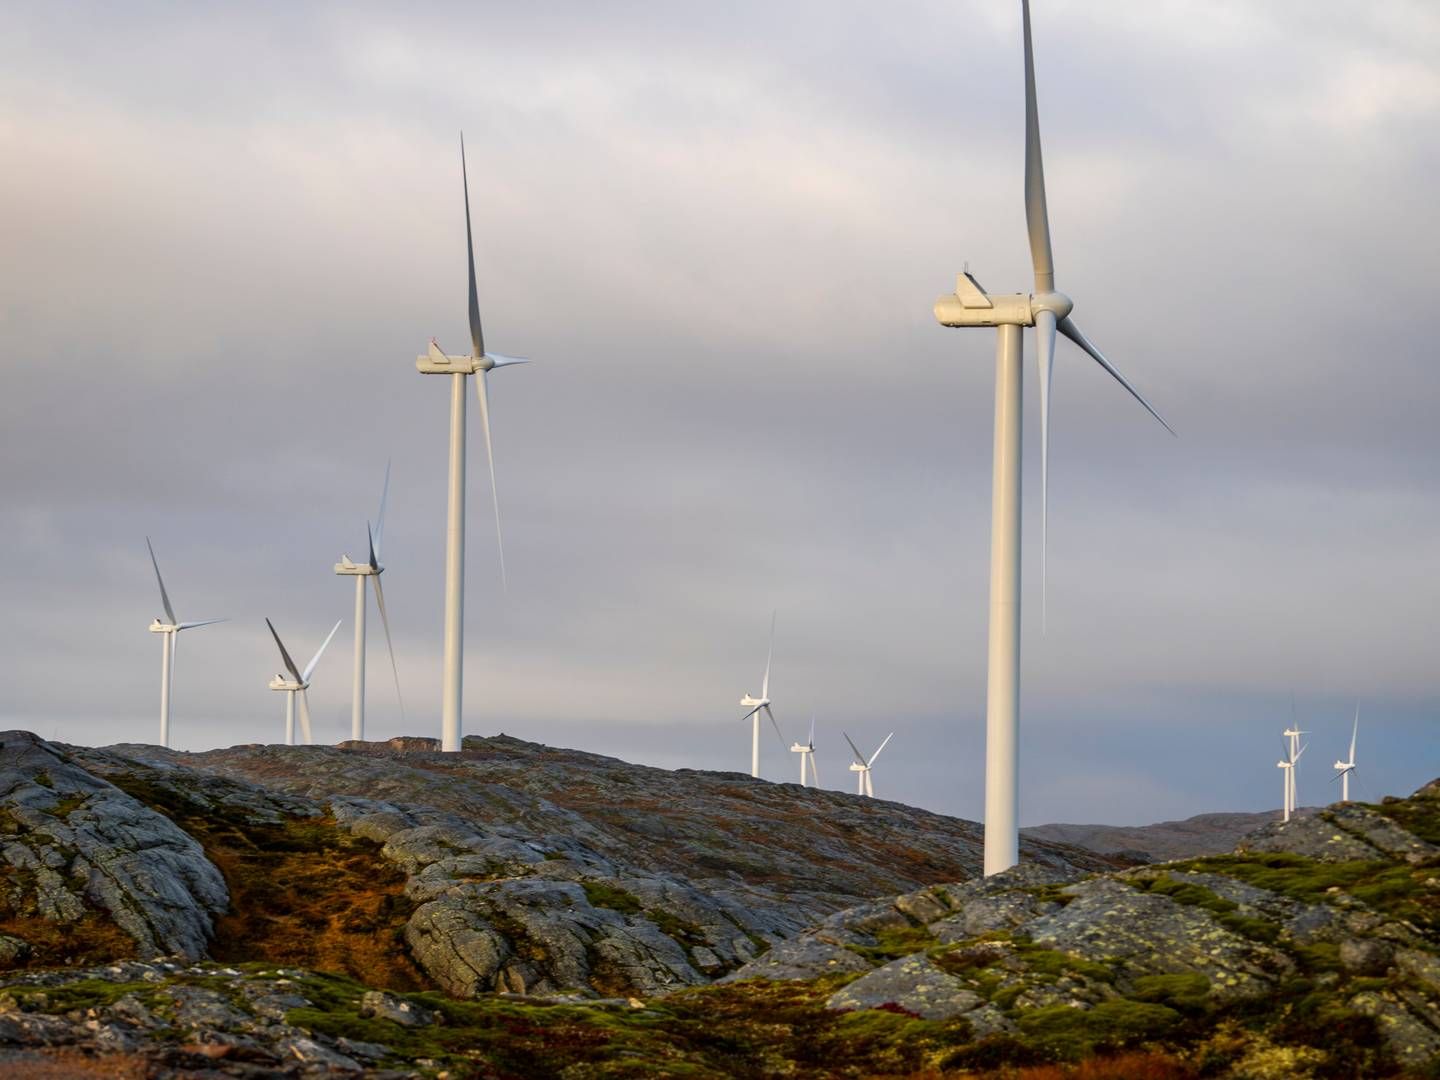 KAN BLI POLITIANMELDT: Storheia vindpark er den største av vindparkene i porteføljen til Fosen Vind, og den andre av vindparkene som ble bygget. Da den ble overført til ordinær drift i februar 2020 var den Norges største med 80 turbiner og en installert effekt på 288 MW. | Foto: Heiko Junge / NTB